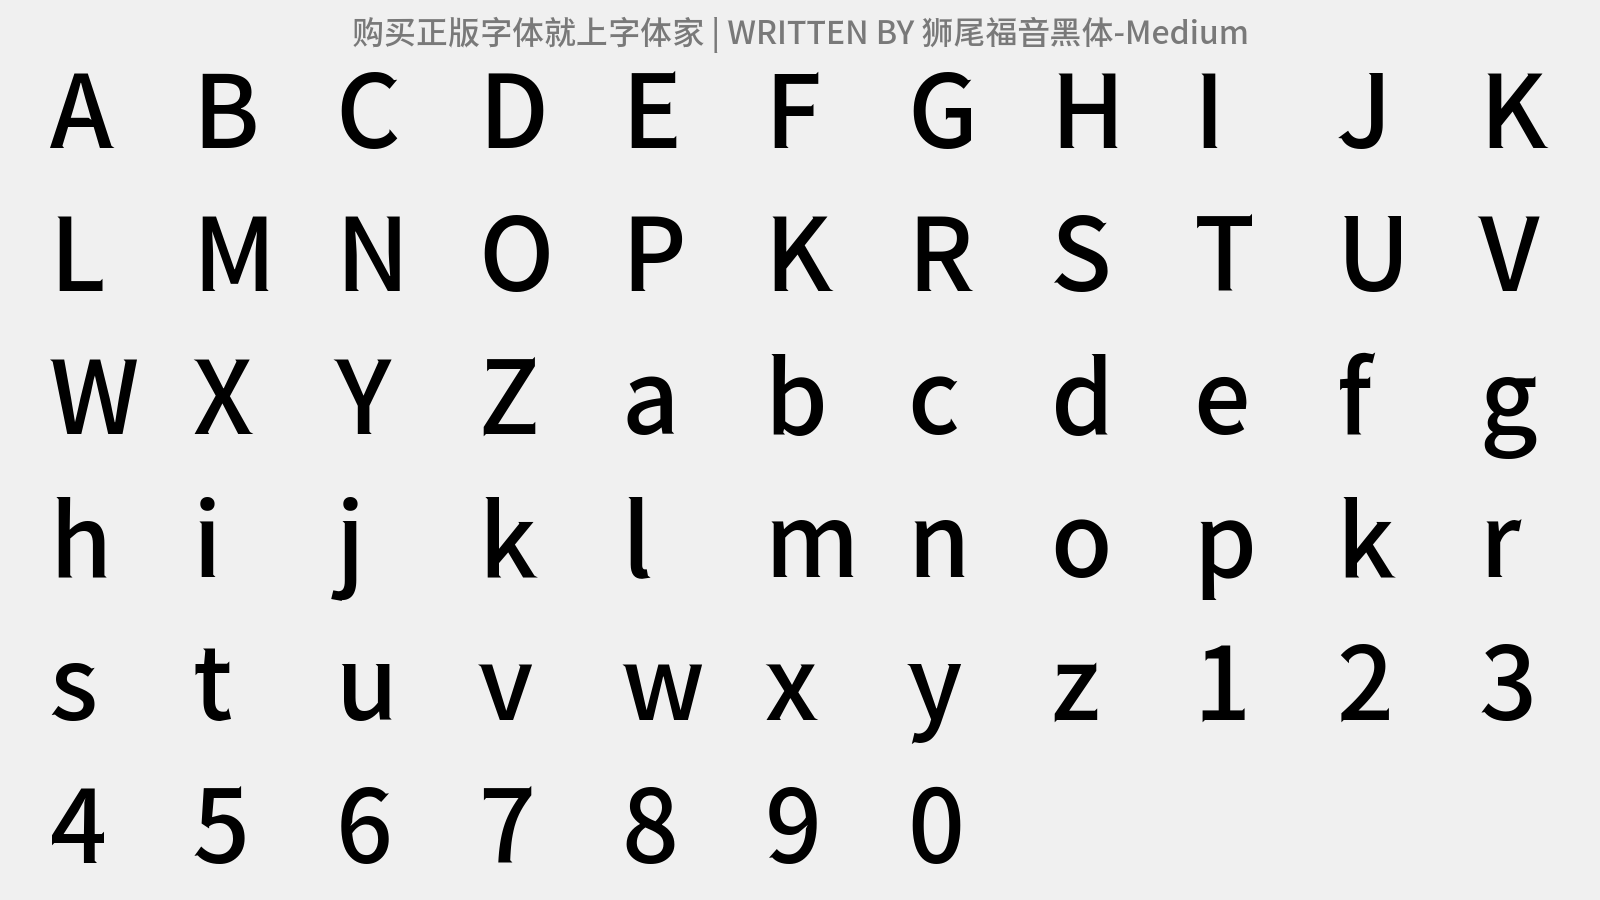 狮尾福音黑体-Medium - 大写字母/小写字母/数字